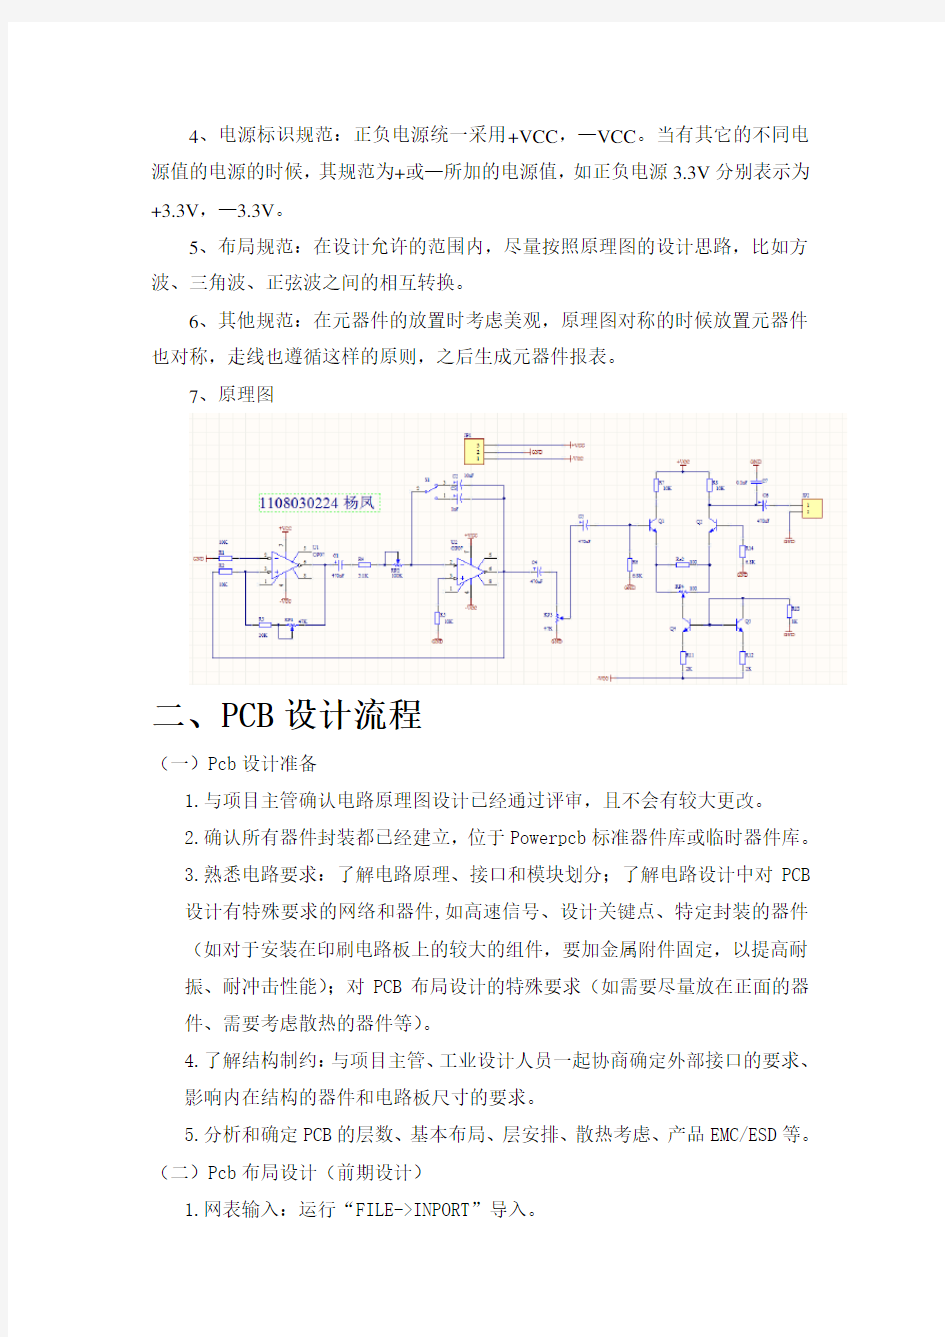 电路原理图及PCB设计规范报告